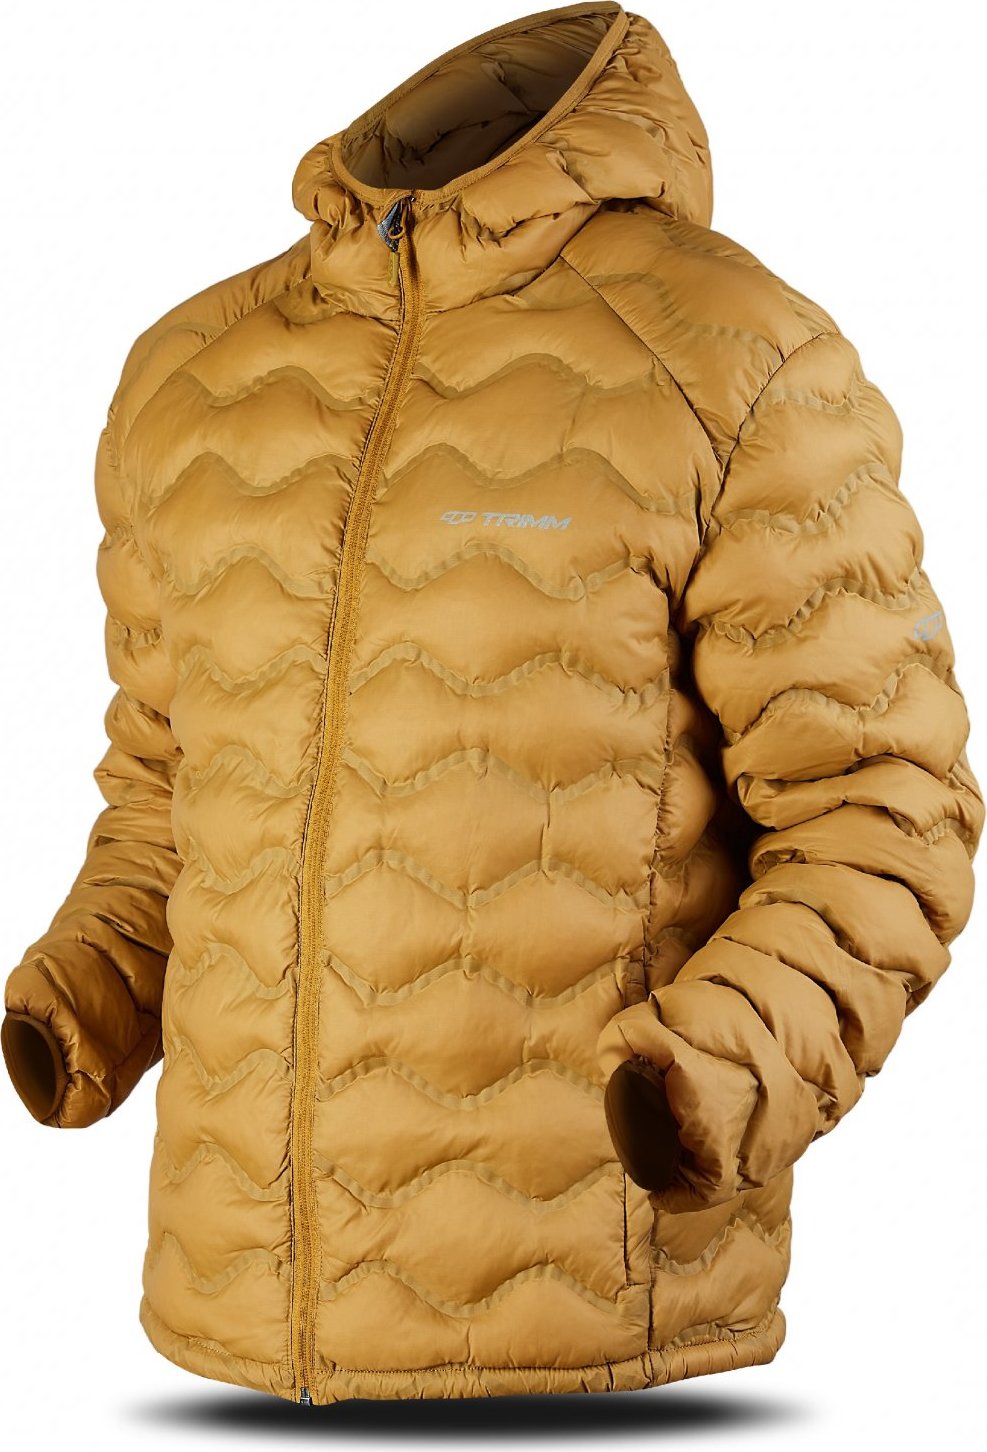 Pánská zimní bunda TRIMM Trock zlatá Velikost: S, Barva: golden/ light grey